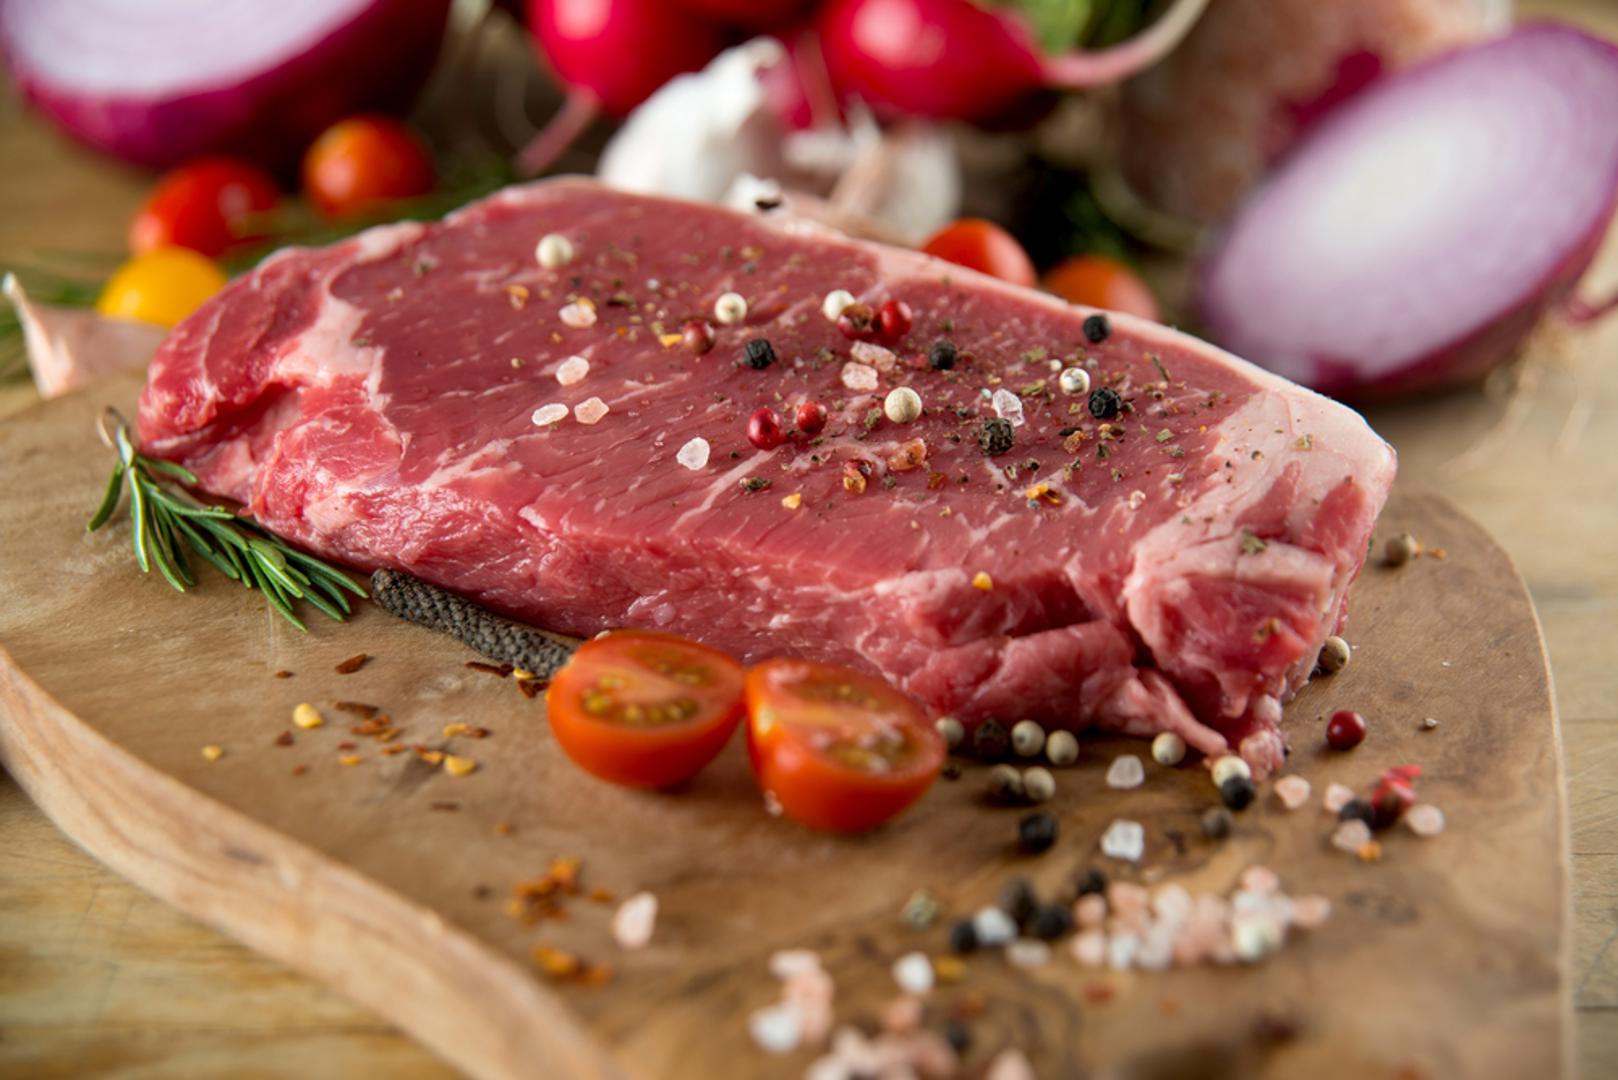 Crveno meso – Iako je crveno meso često povezano samo s bolestima srca, ono povećava i rizik od razvijanja dijabetesa. Ako svaki dan na jelovniku imate crveno meso, šanse da će te oboljeti od dijabetesa tipa 2 veće su za 19 posto.